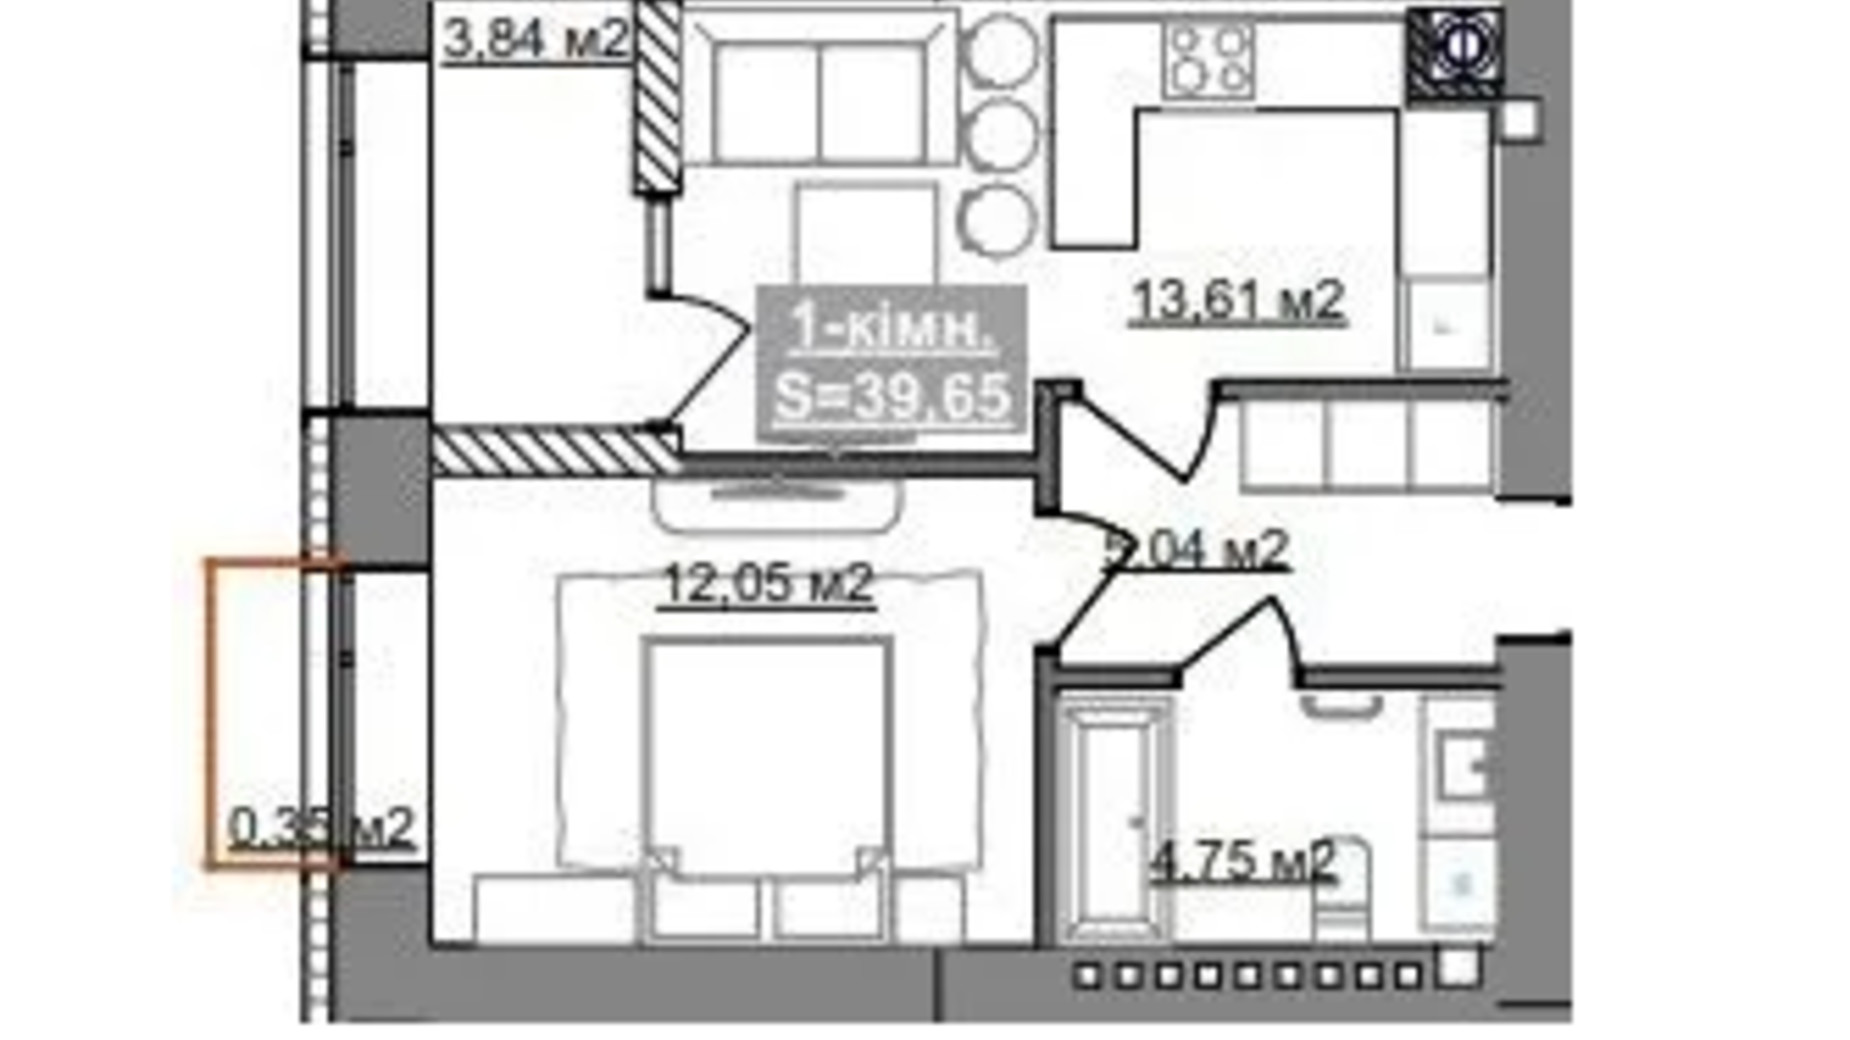 Планування 1-кімнатної квартири в ЖК Паркове містечко (7 черга) 39.65 м², фото 653514